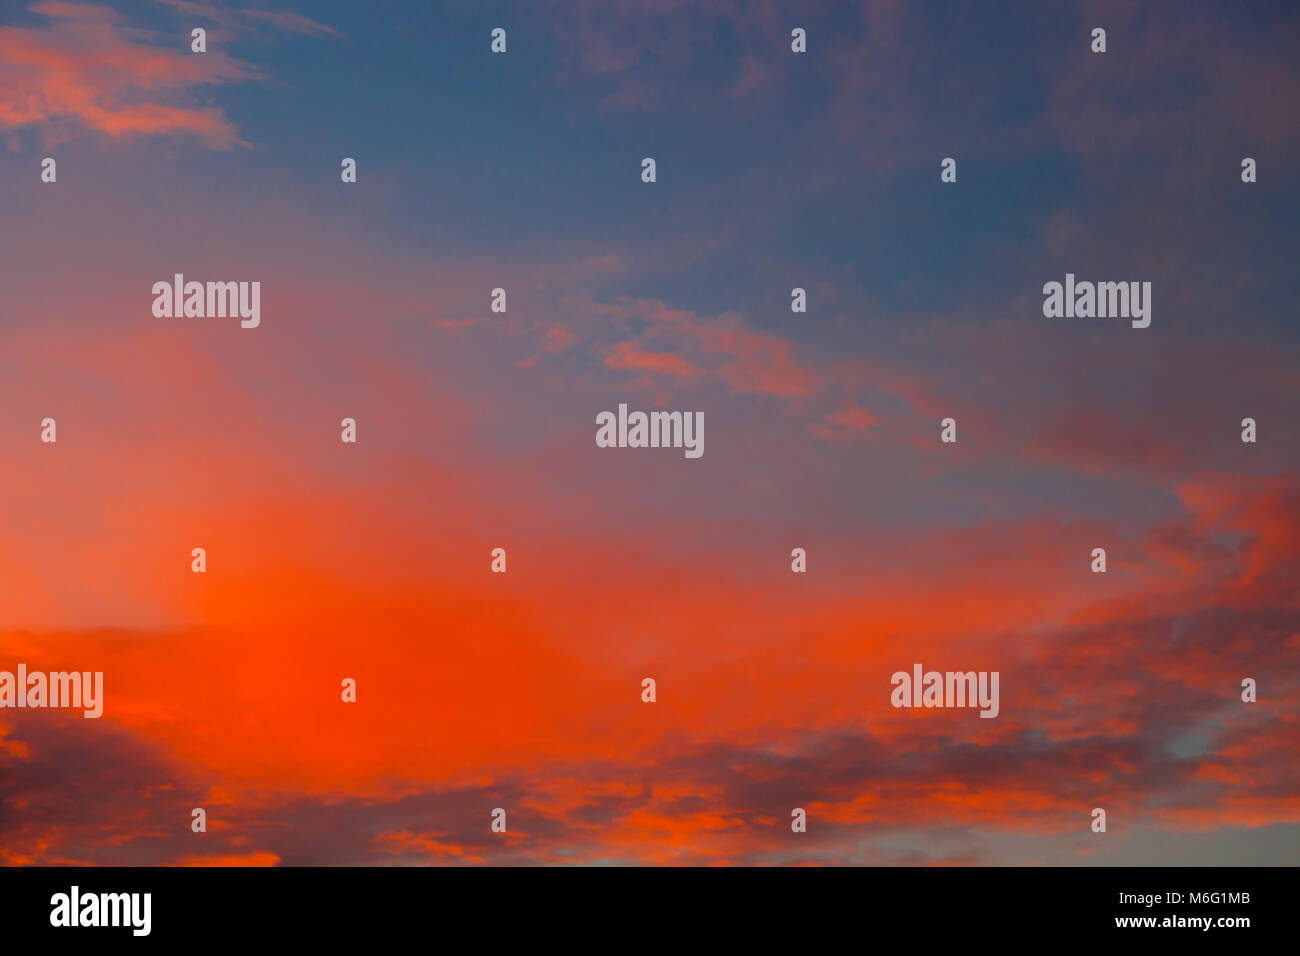 Dramatischer Sonnenuntergang Himmel mit Wolken in kräftigen Rot- und Orangetönen gestrichen Stockfoto